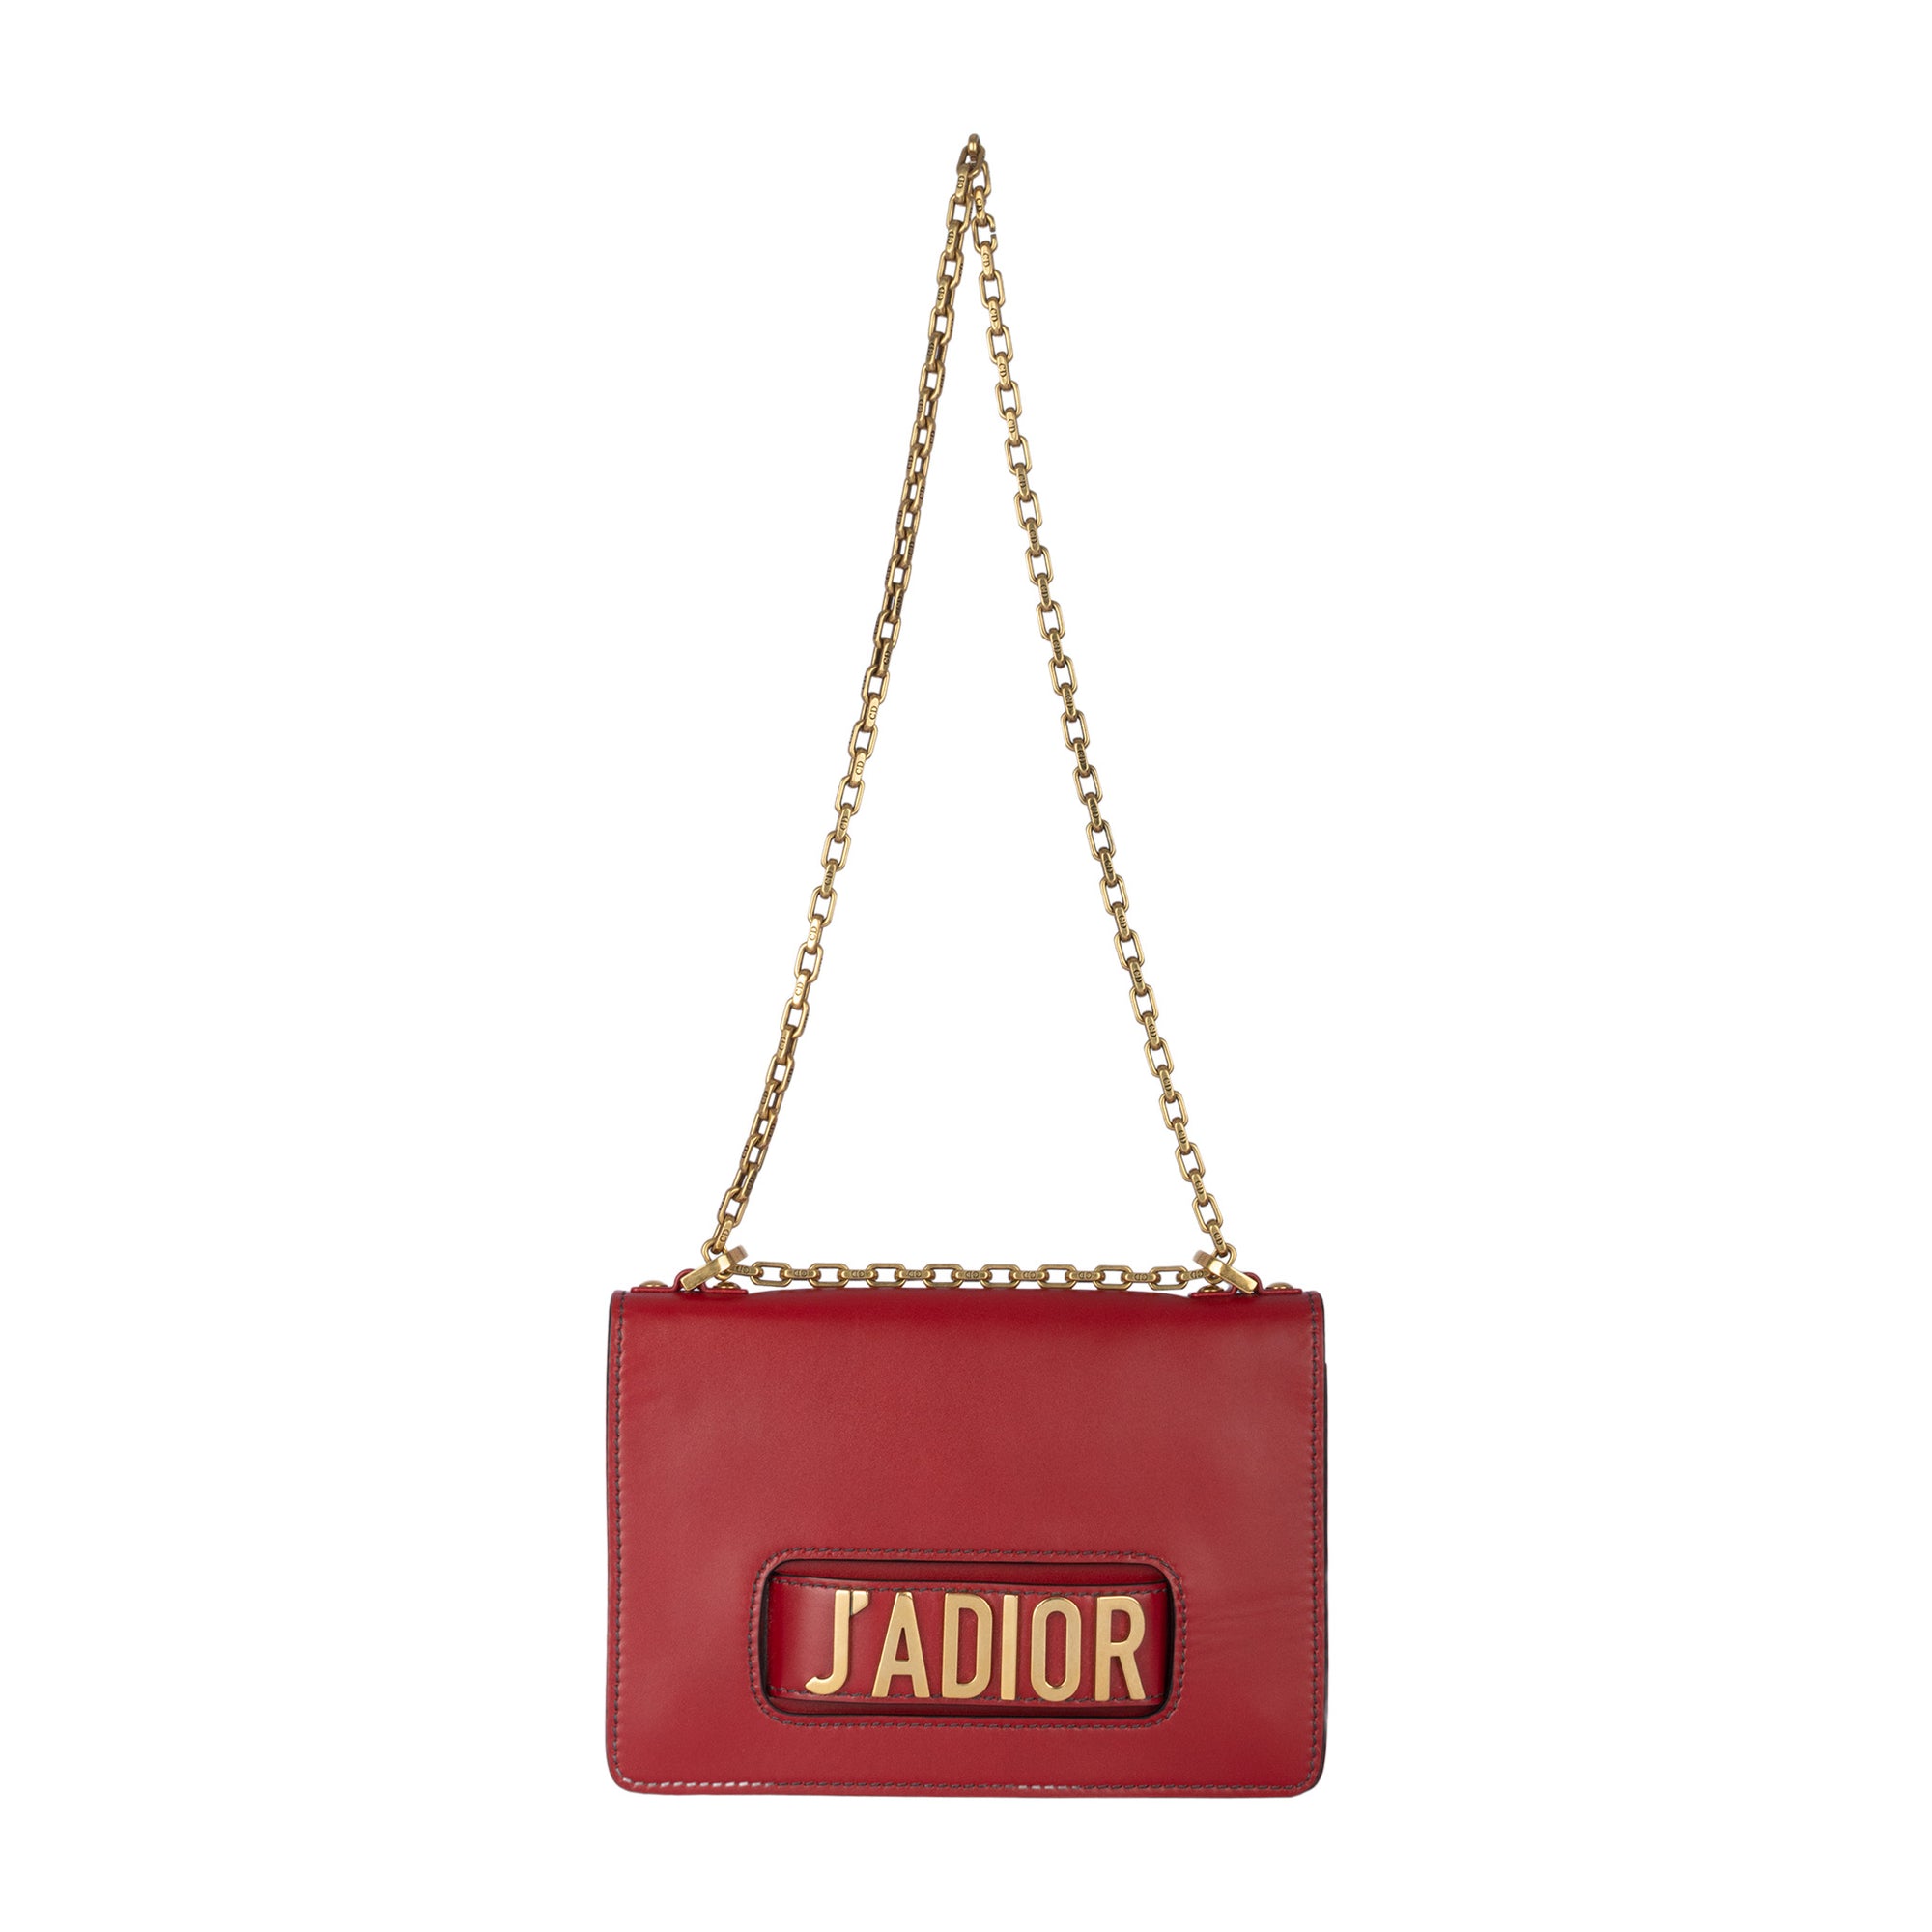 Christian Dior Jadior Red Shoulder Bag – STYLISHTOP